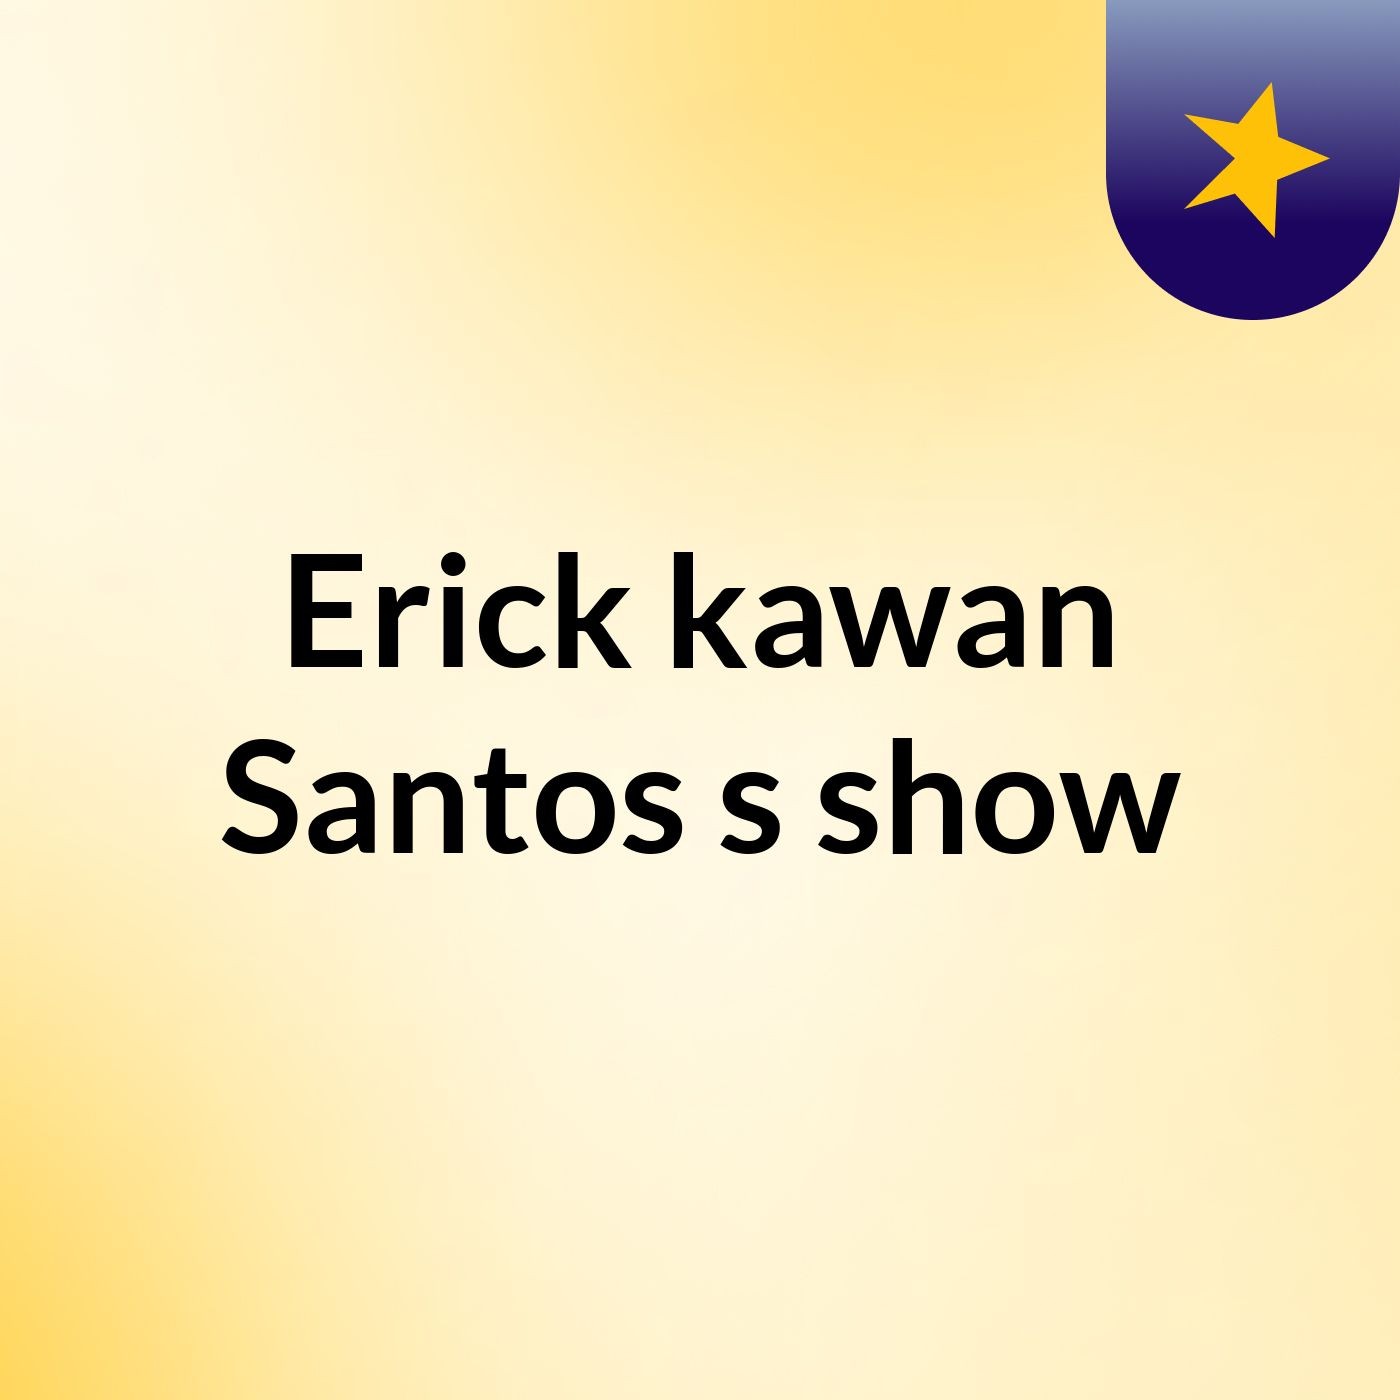 Erick kawan Santos's show